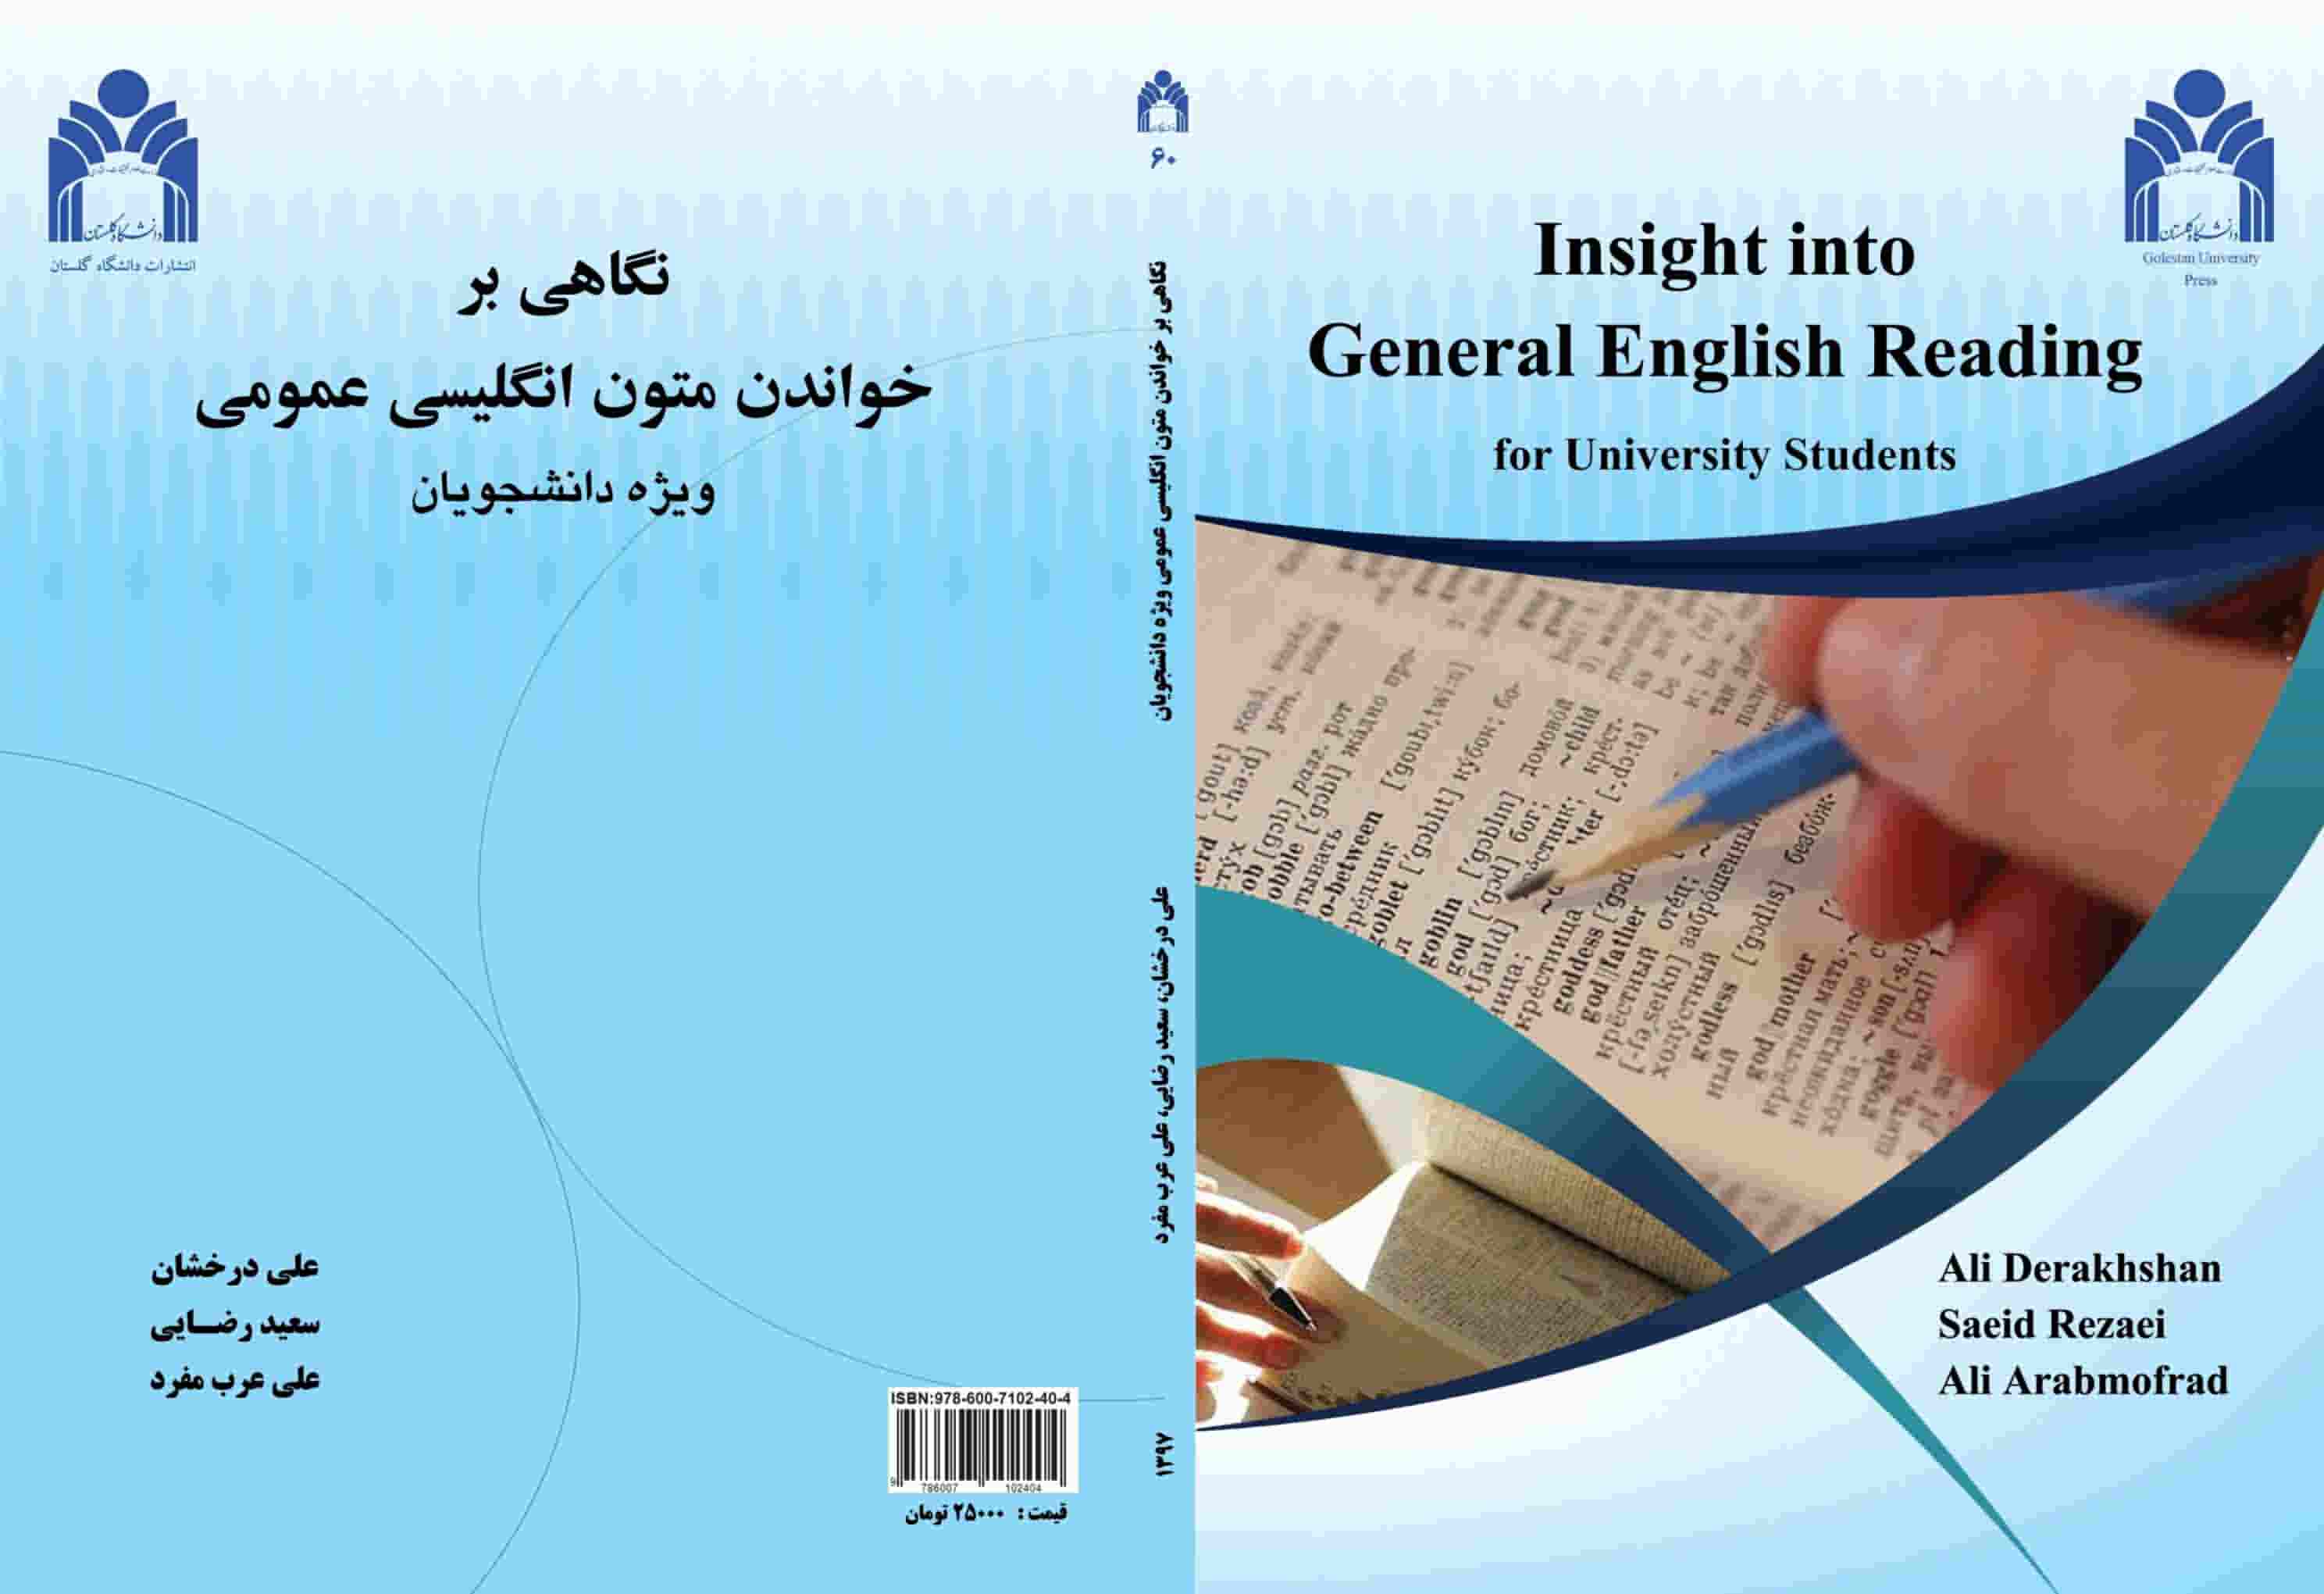 دانلود رایگان pdf کتاب Insight into General English Reading for University Students دانشگاه گلستان